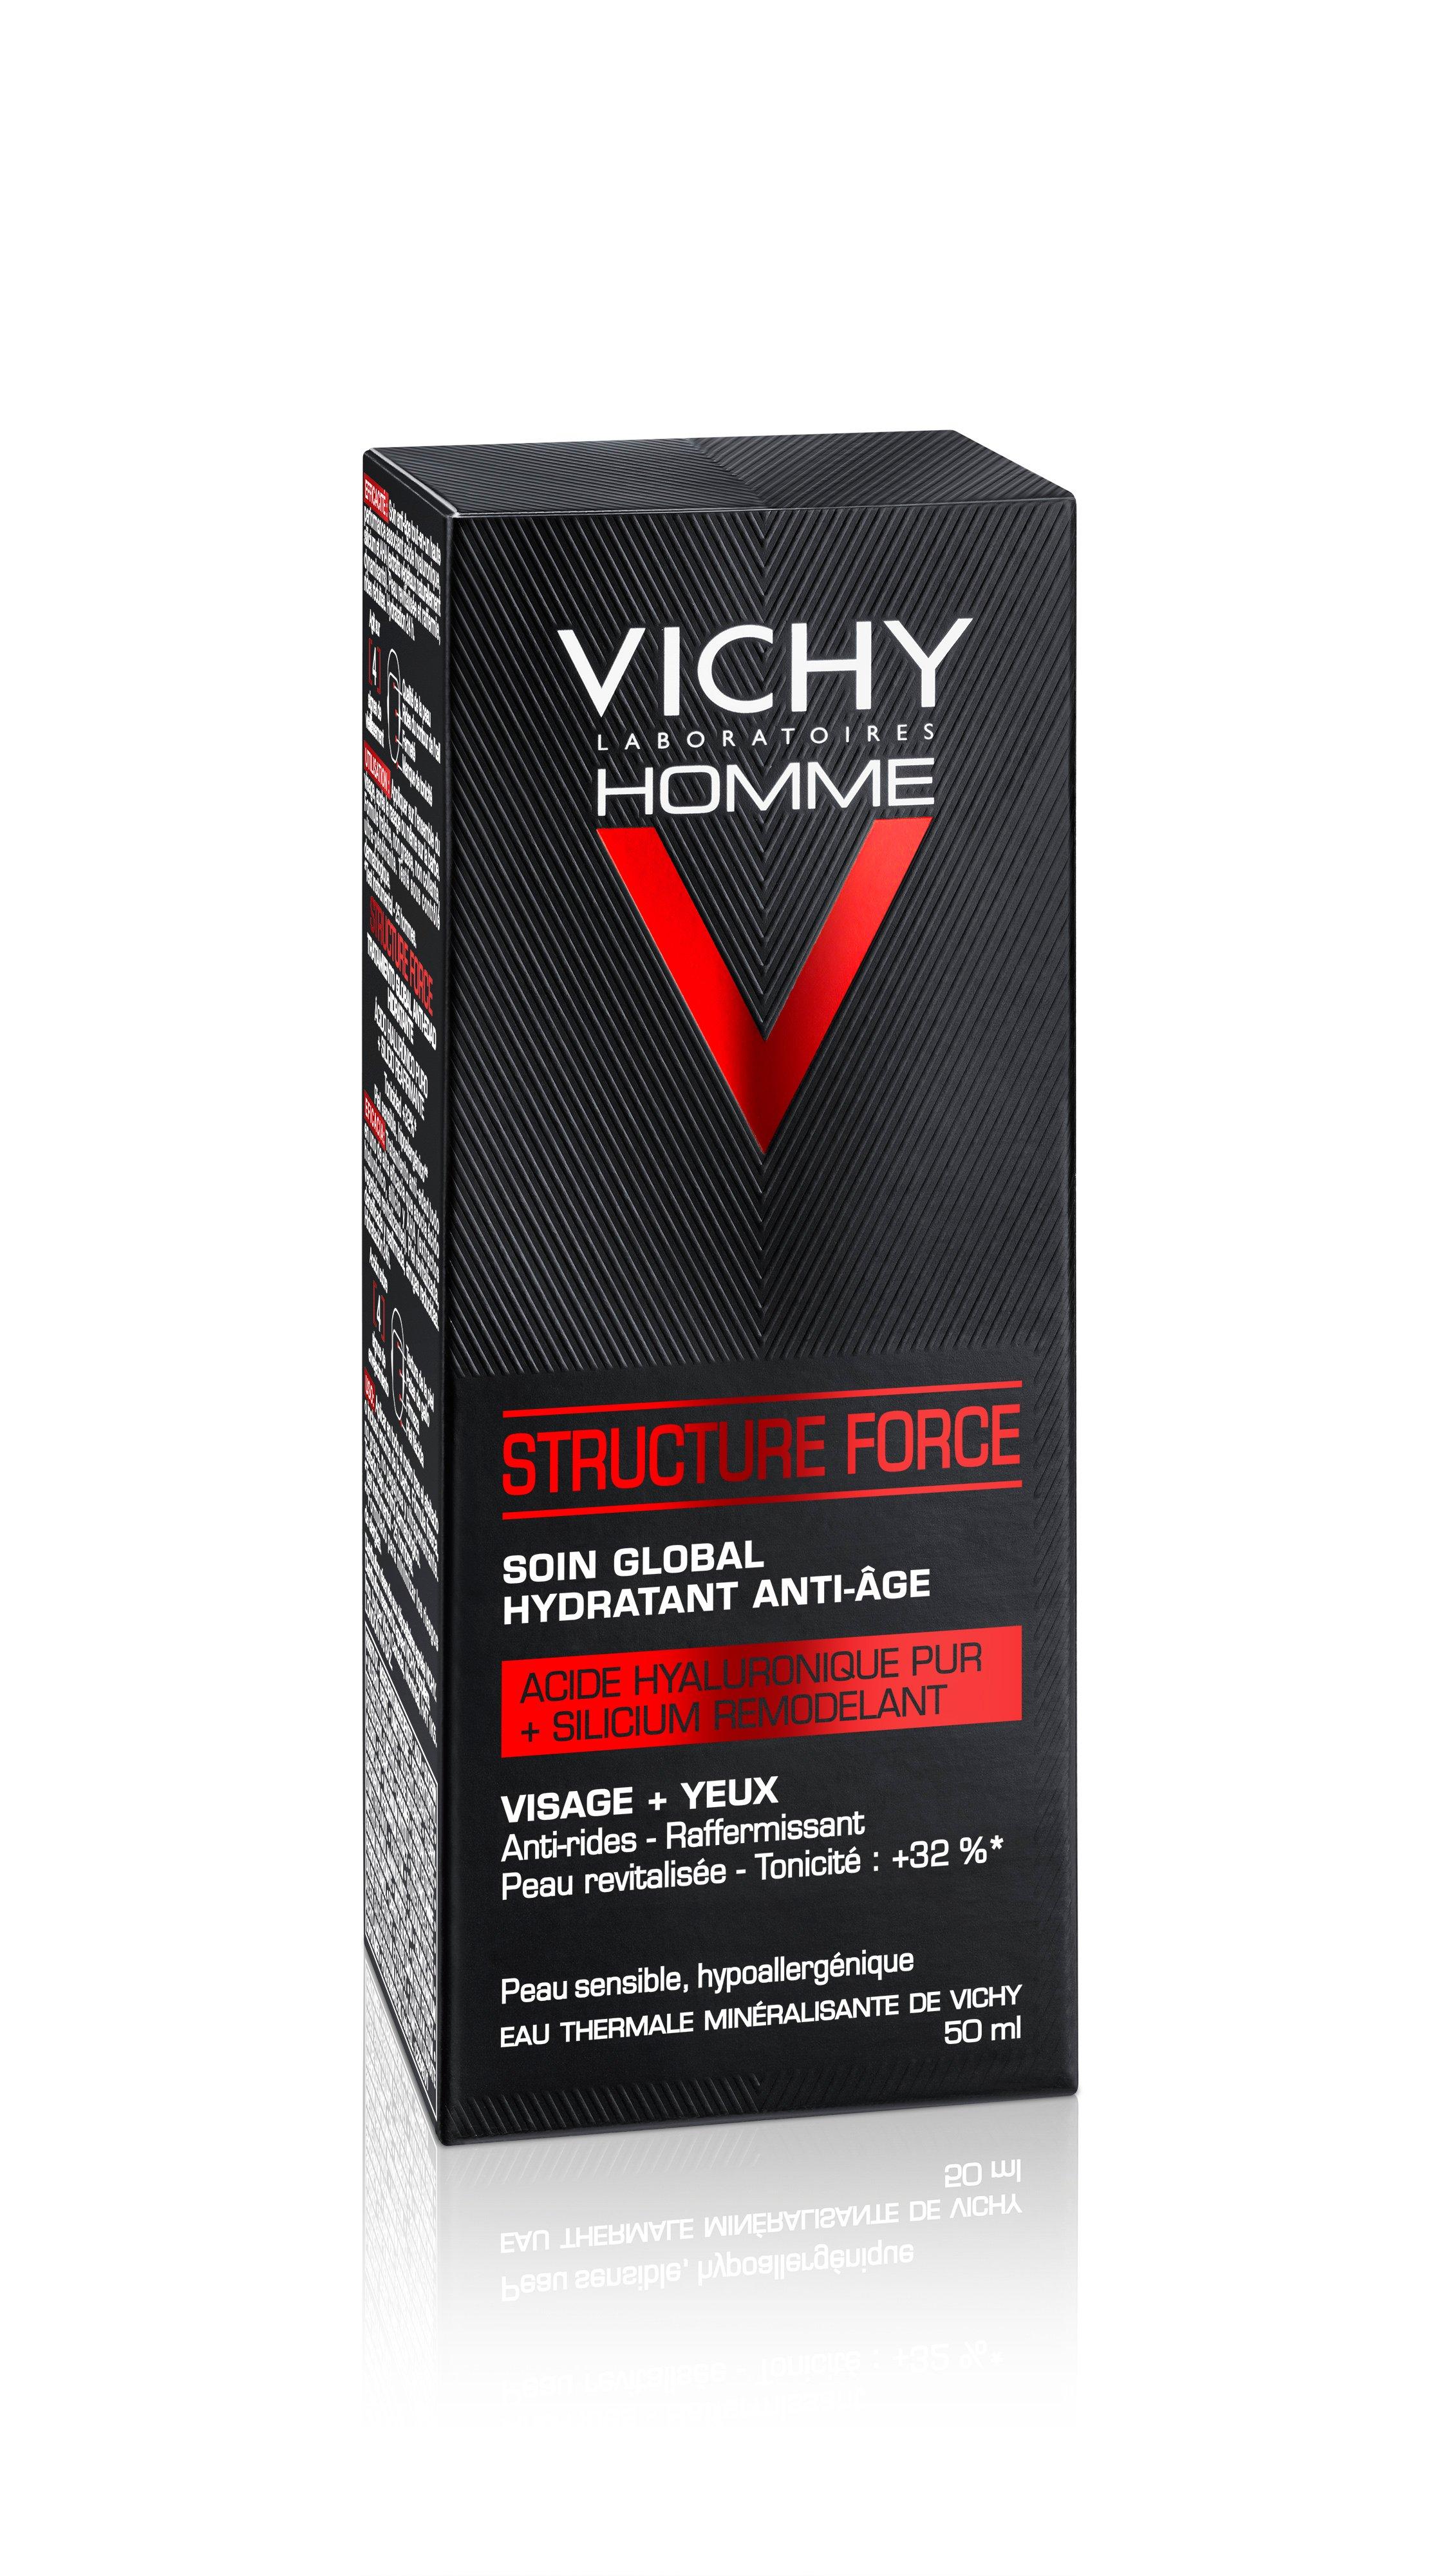 VICHY  Homme Structure Force - Komplette Anti-Aging Pflege für Gesicht & Augenkonturen 